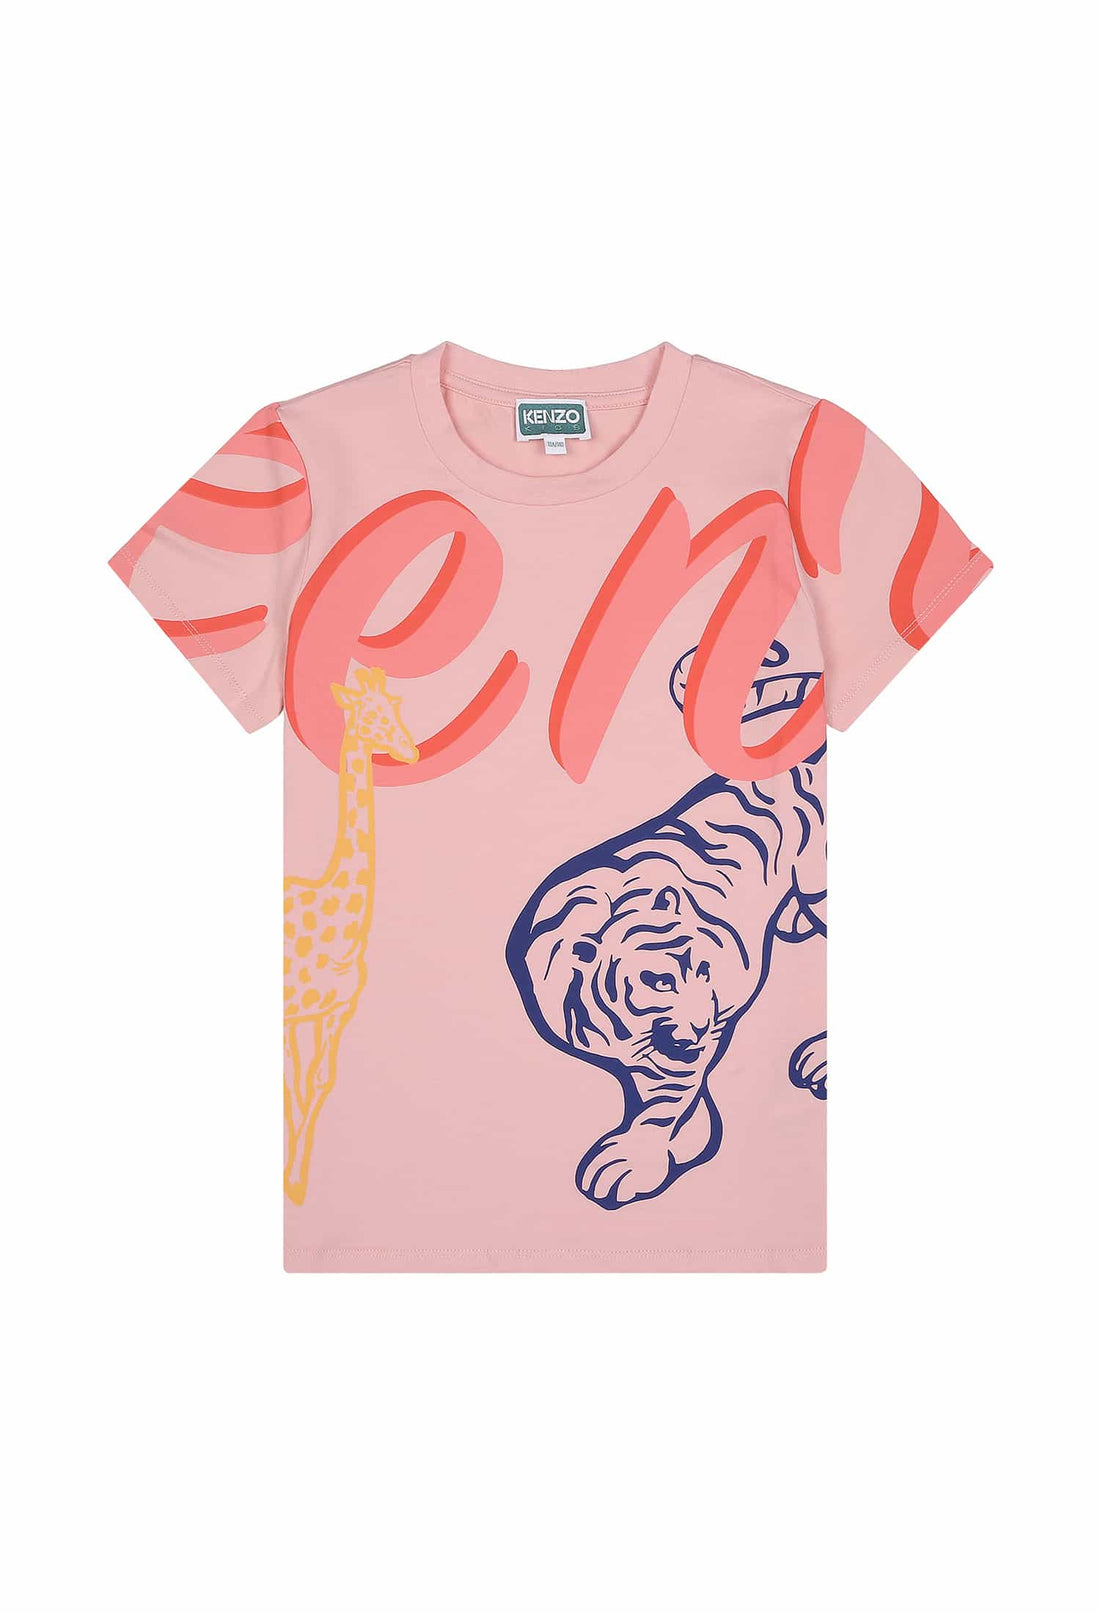 KENZO ;Koszulka różowa z nadrukiem Kenzo KENZO KIDS 123 K15615 123/9Rc